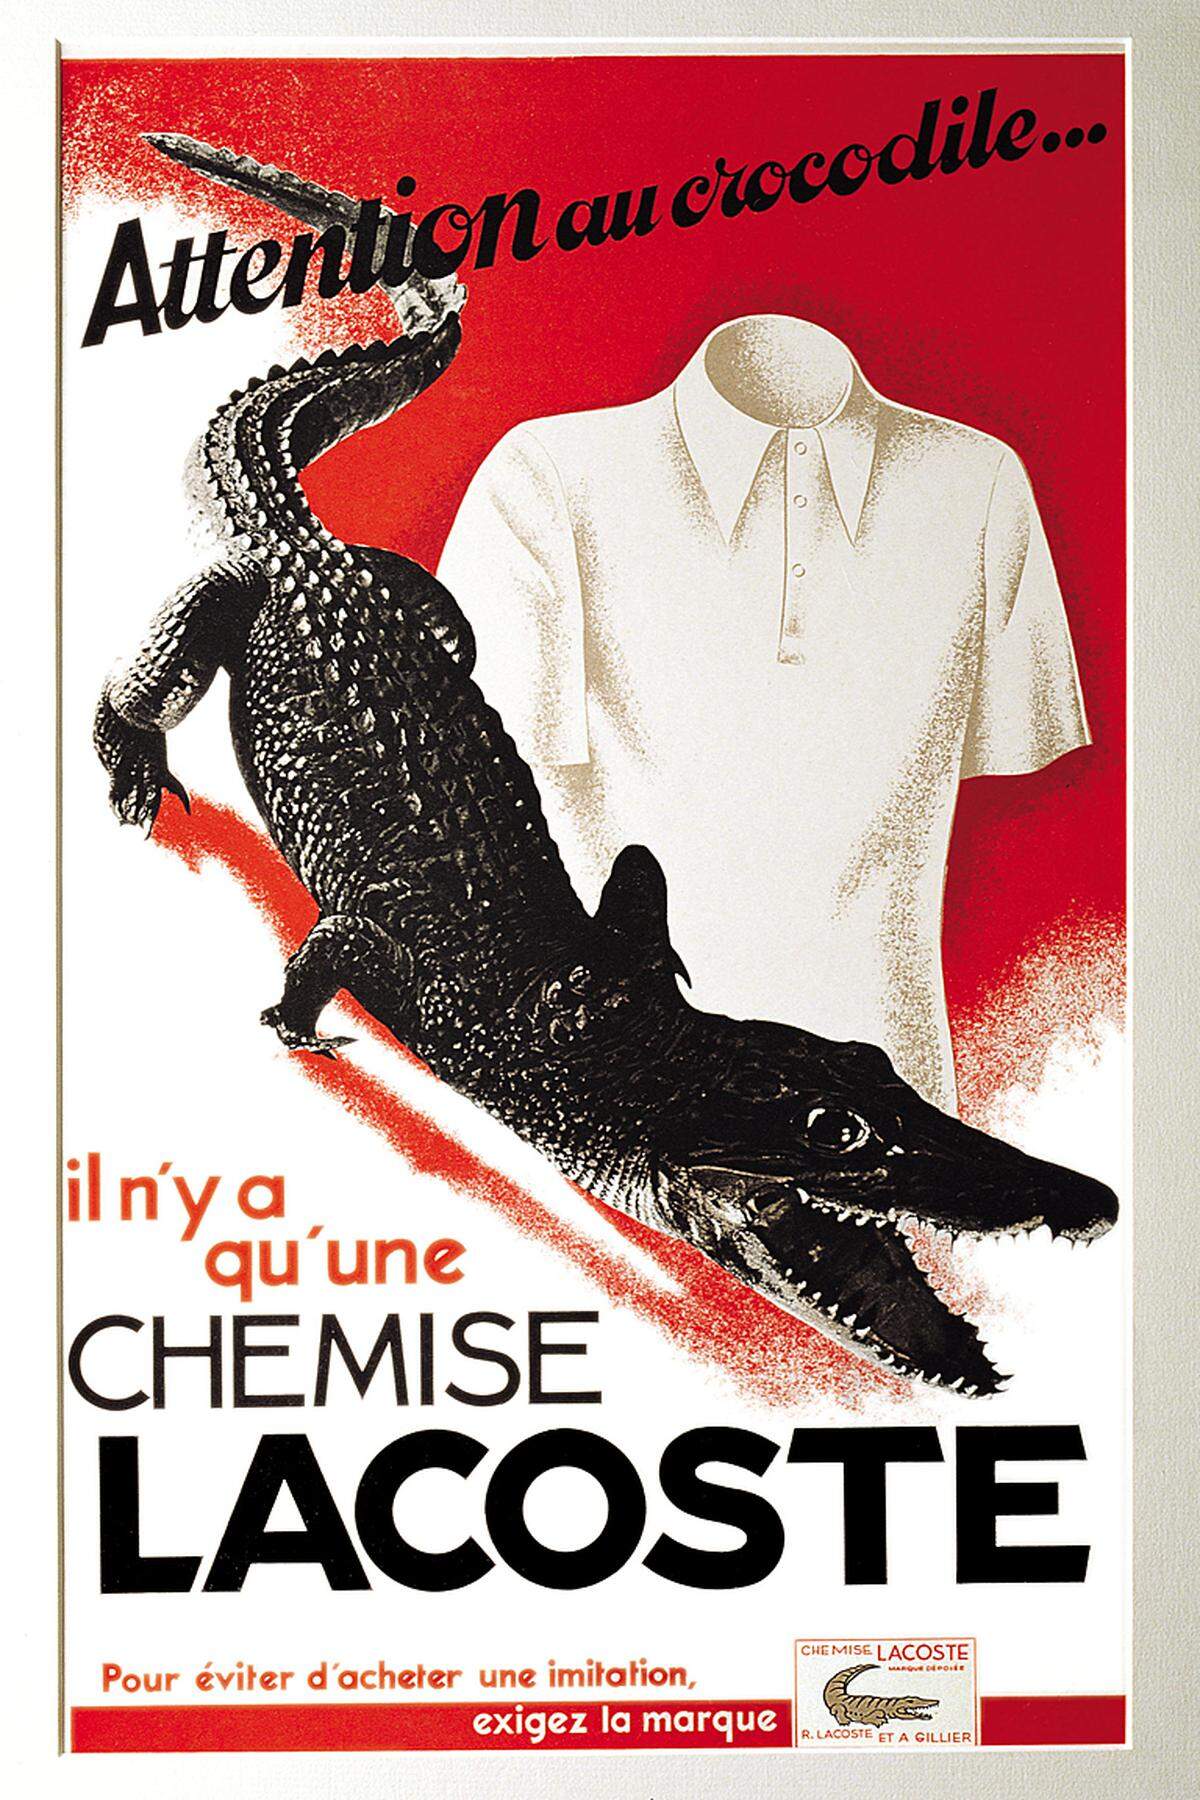 Nach der Beendigung seiner Karriere 1929 brachte er seine Lacoste-Hemden auf den Markt. Das erste Modell "L.12.12" war wie ein Tennishemd weiß. "L" stand für Lacoste, "1" für den neu entwickelten Rippenstoff, "2" für kurzärmelig und "12" für das Mustermodell.Im Bild: Lacoste-Kampagne aus dem Jahr 1937.